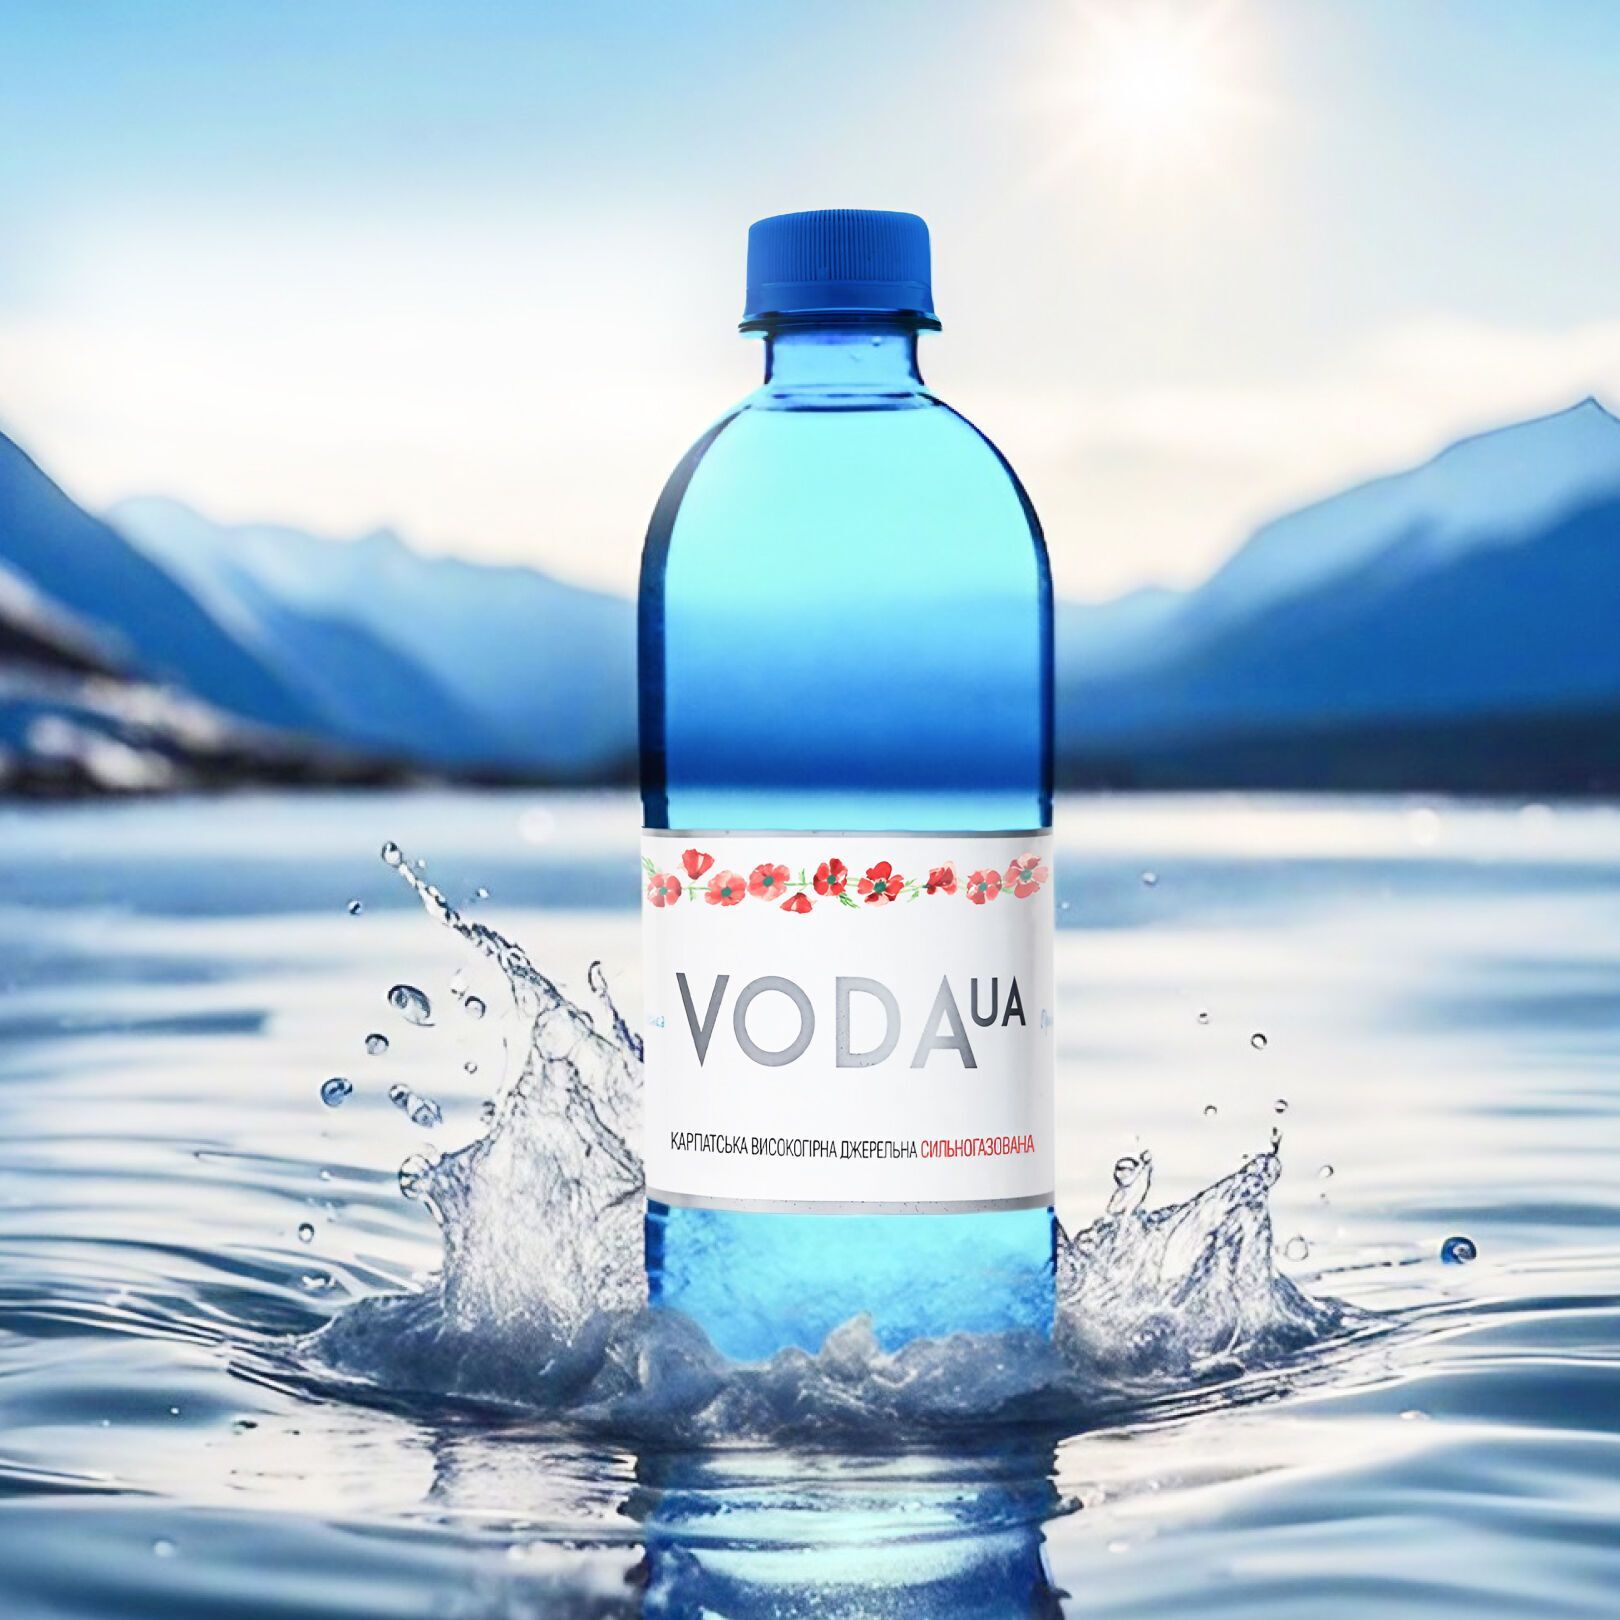 Андрей Матюха стал новым владельцем бренда минеральных вод VODA UA